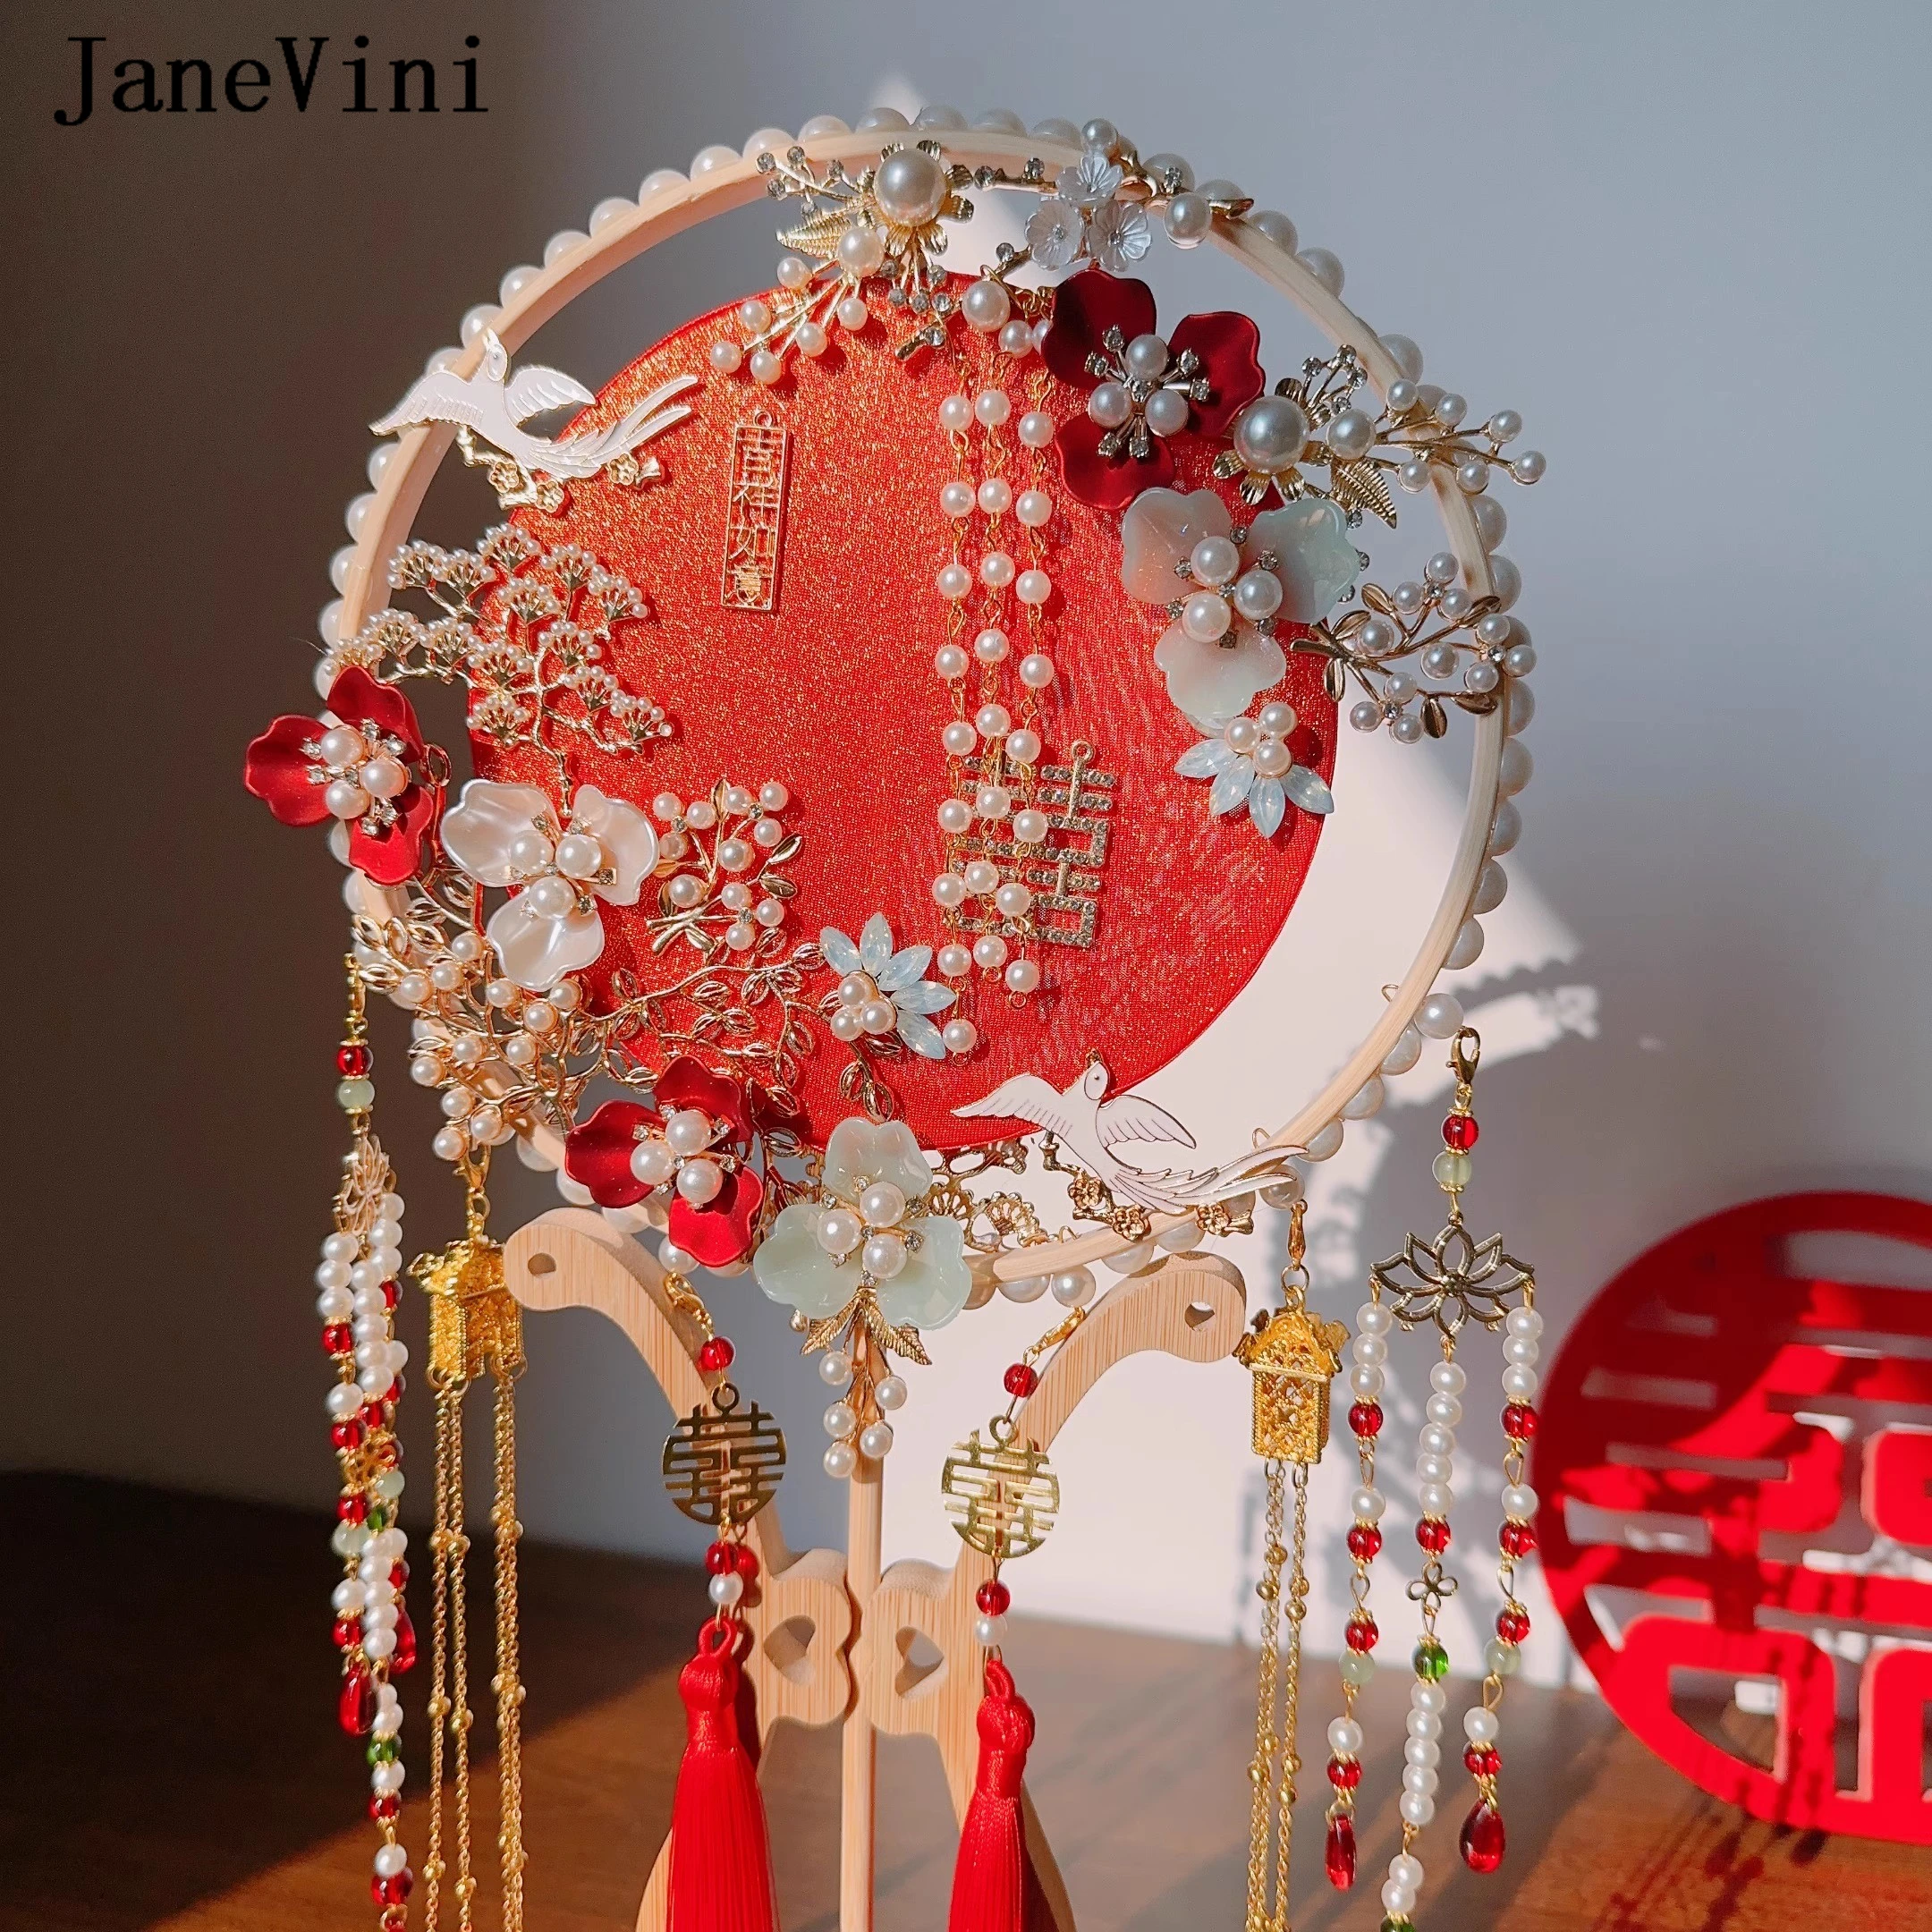 JaneVini Роскошный веер невесты ручной работы, Красный свадебный букет в стиле ретро, Цветы из бисера, жемчуг, Китайский веер, Украшение для фотографии Hanfu Изображение 3 